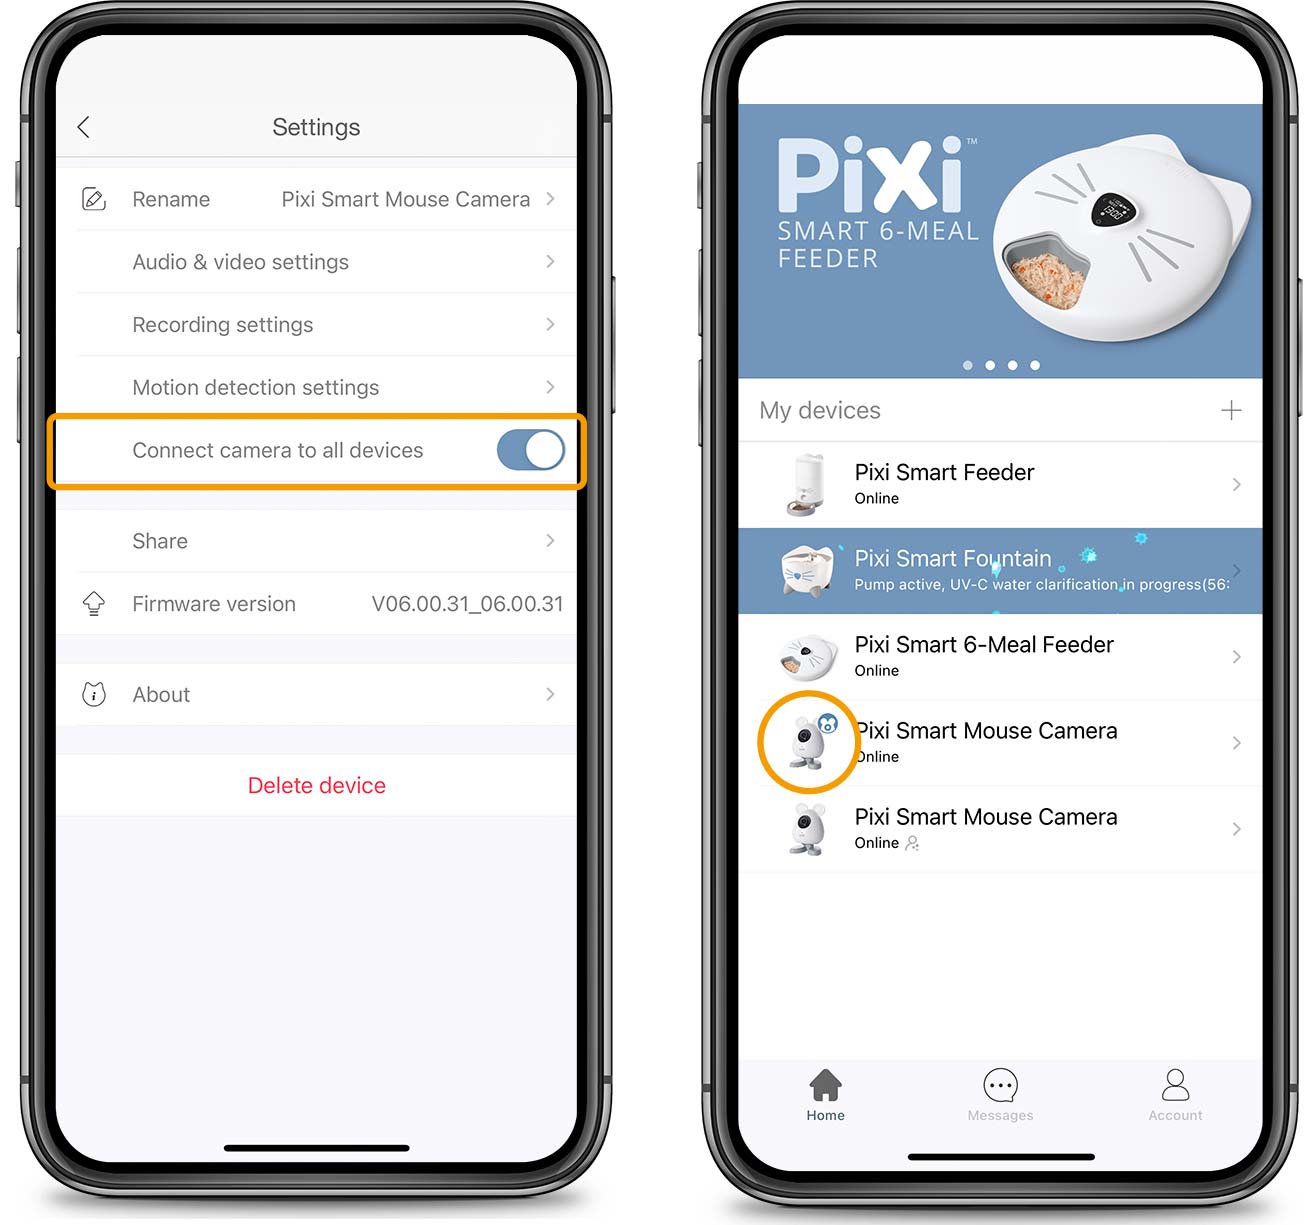 Cámara Ratón Inteligente conectada a otros dispositivos en la app PIXI